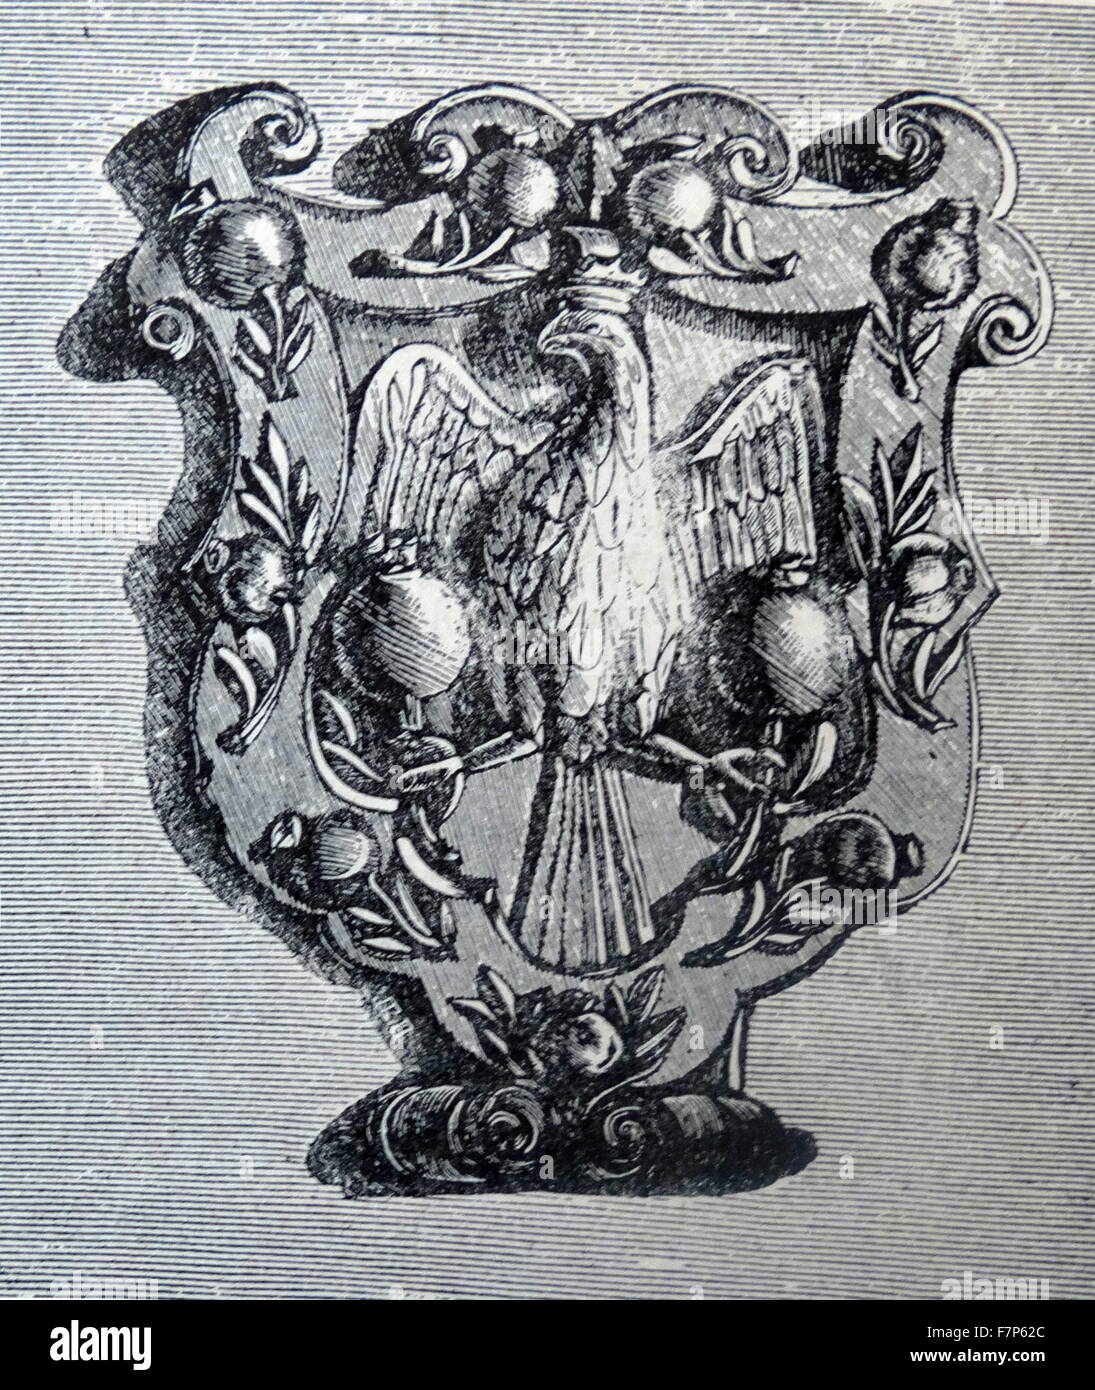 Gravur von Blazon von Santa Fe. Das Wappen ist eine formale Beschreibung von Wappen, Flagge oder ähnliche Wappen, aus denen der Leser das entsprechende Bild rekonstruieren kann. Vom 19. Jahrhundert Stockfoto